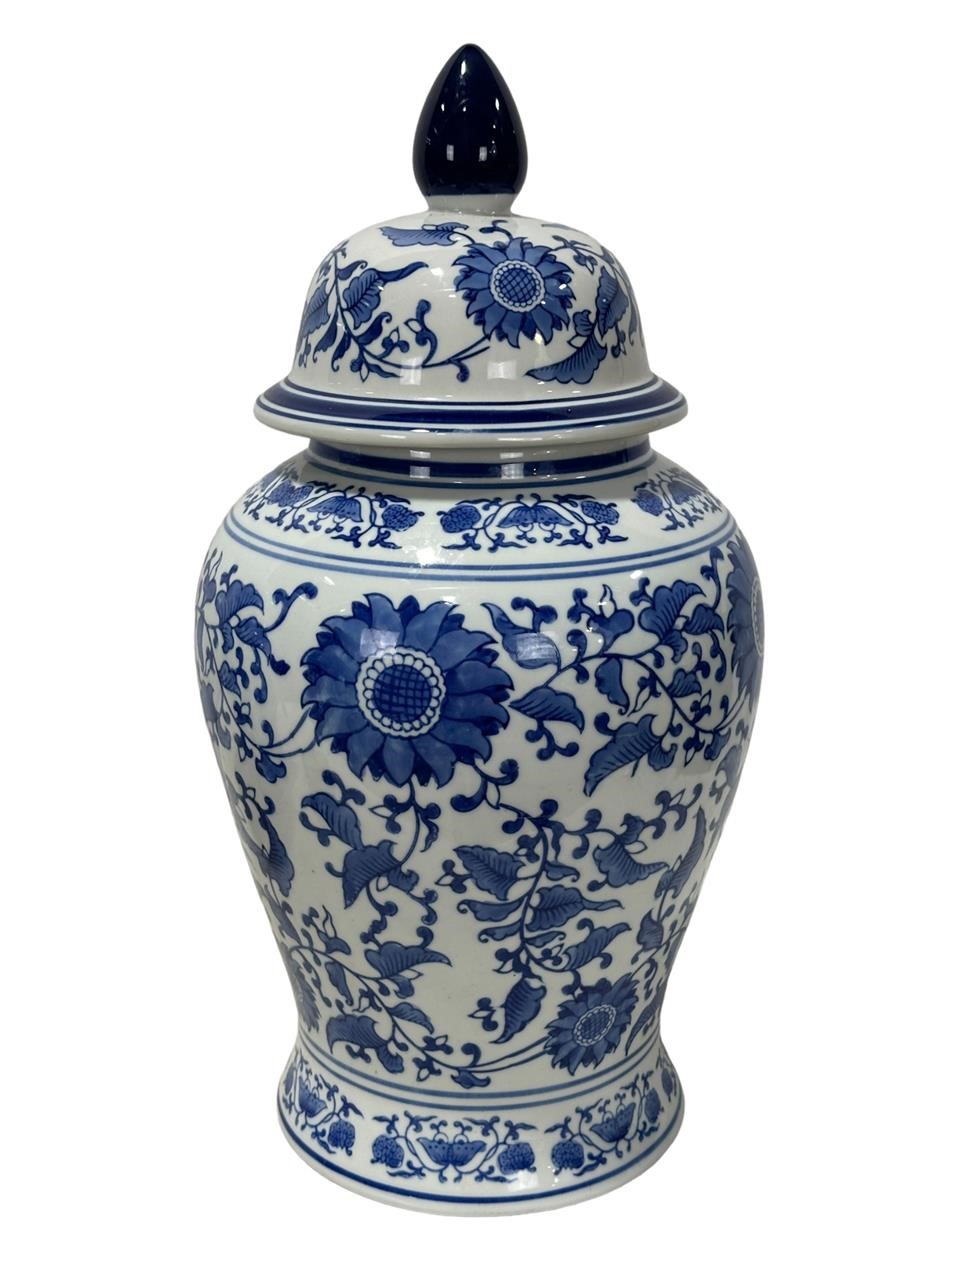 Asian Blue & White Porcelain Urn